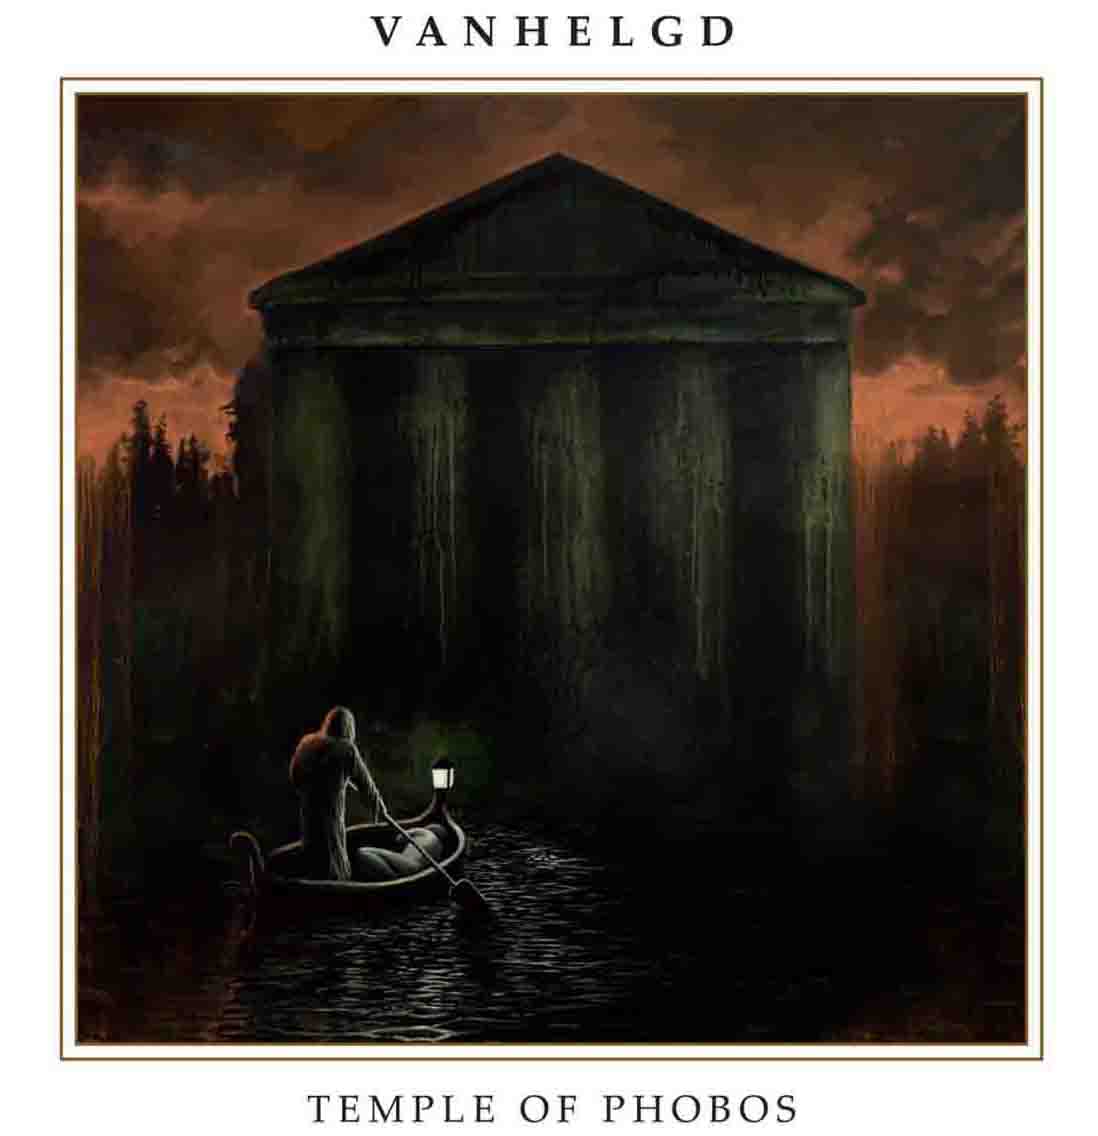 Vanhelgd - Temple of Phobos (2016) Album Info